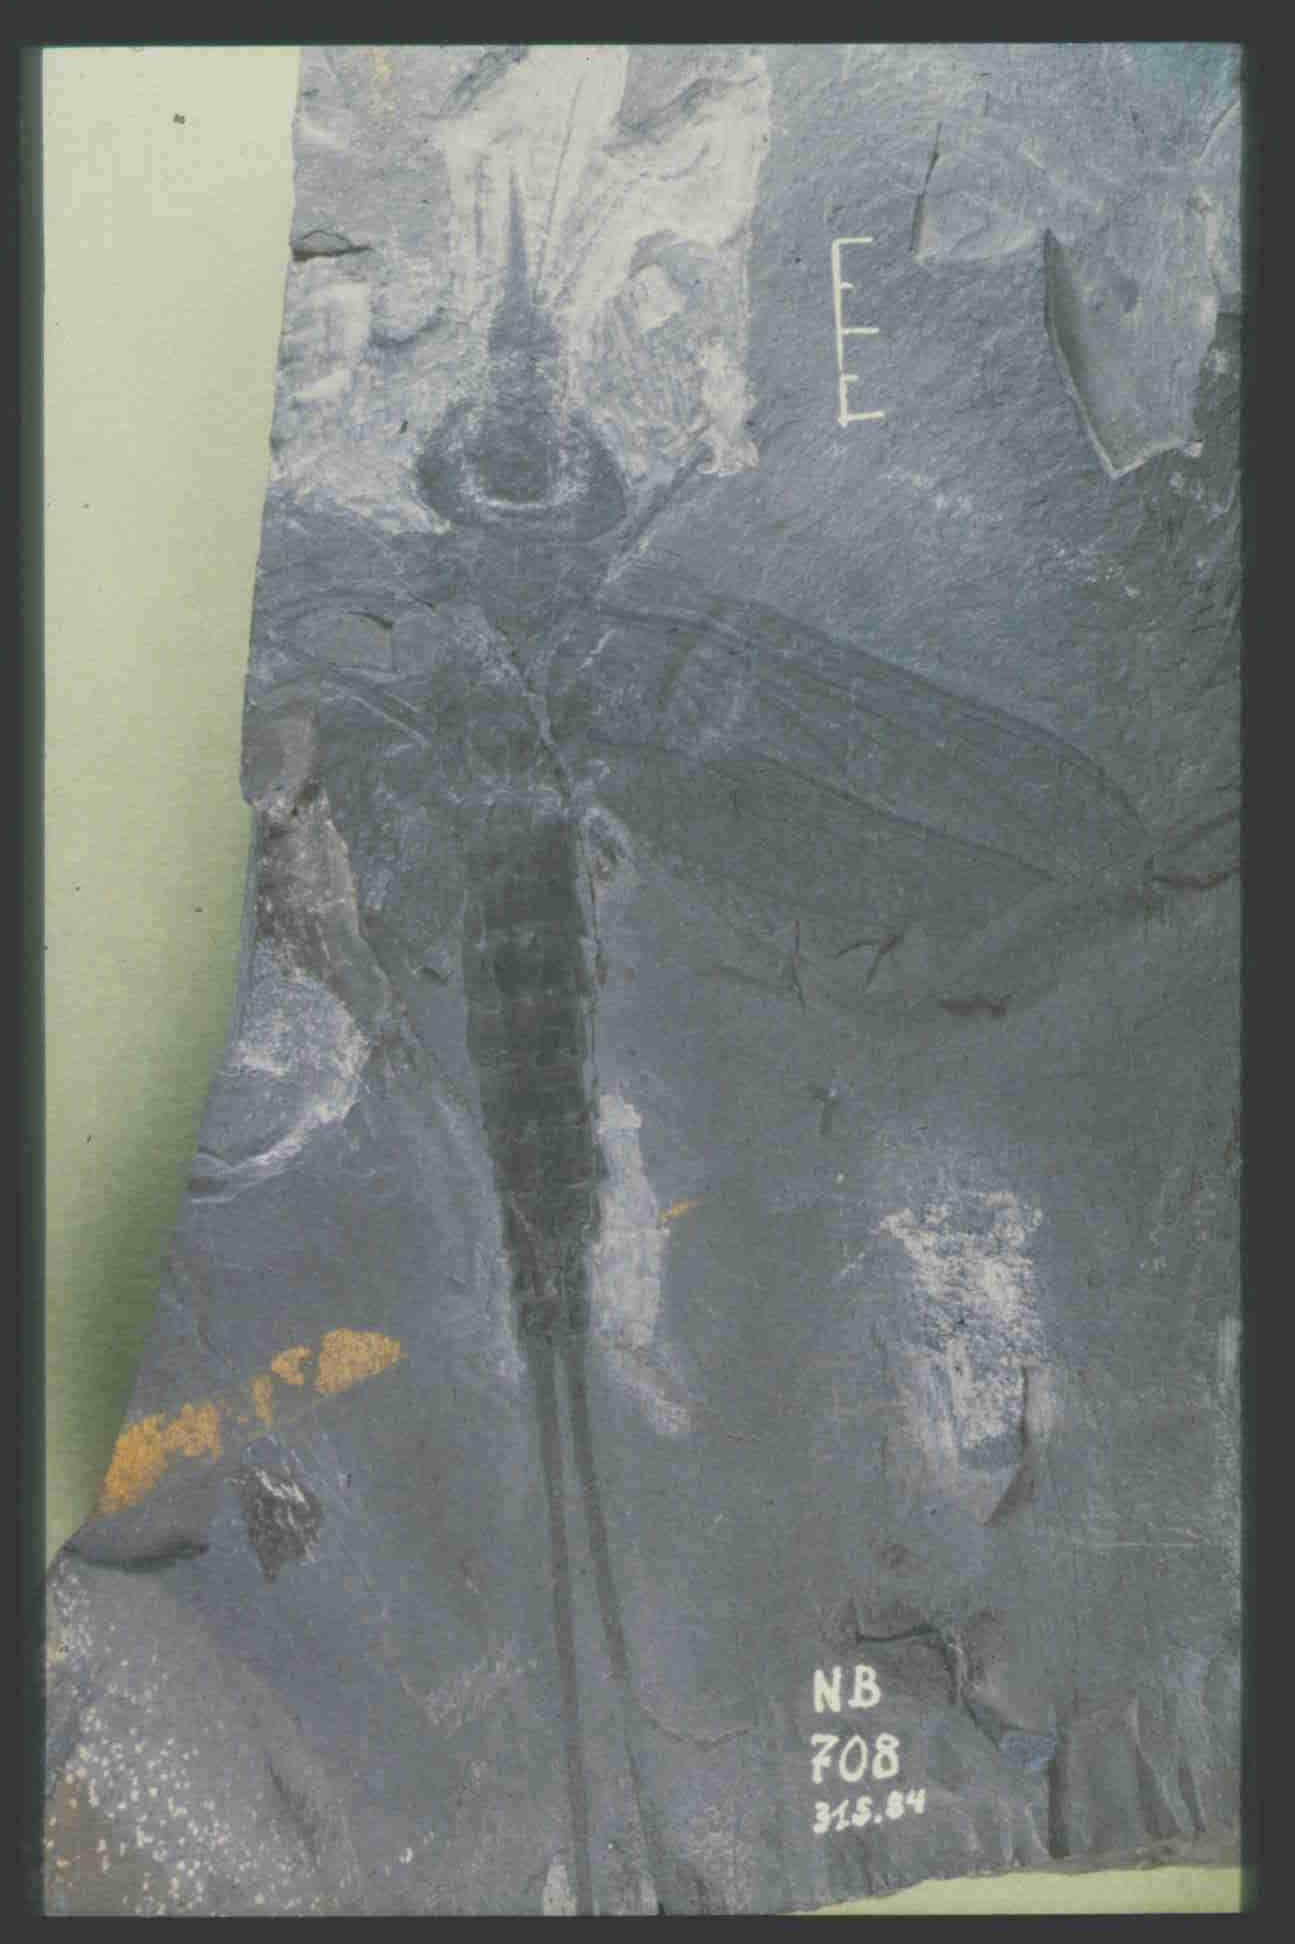 Fossil eines Insekts mit vier rundlichen Flügeln und langem Schwanz